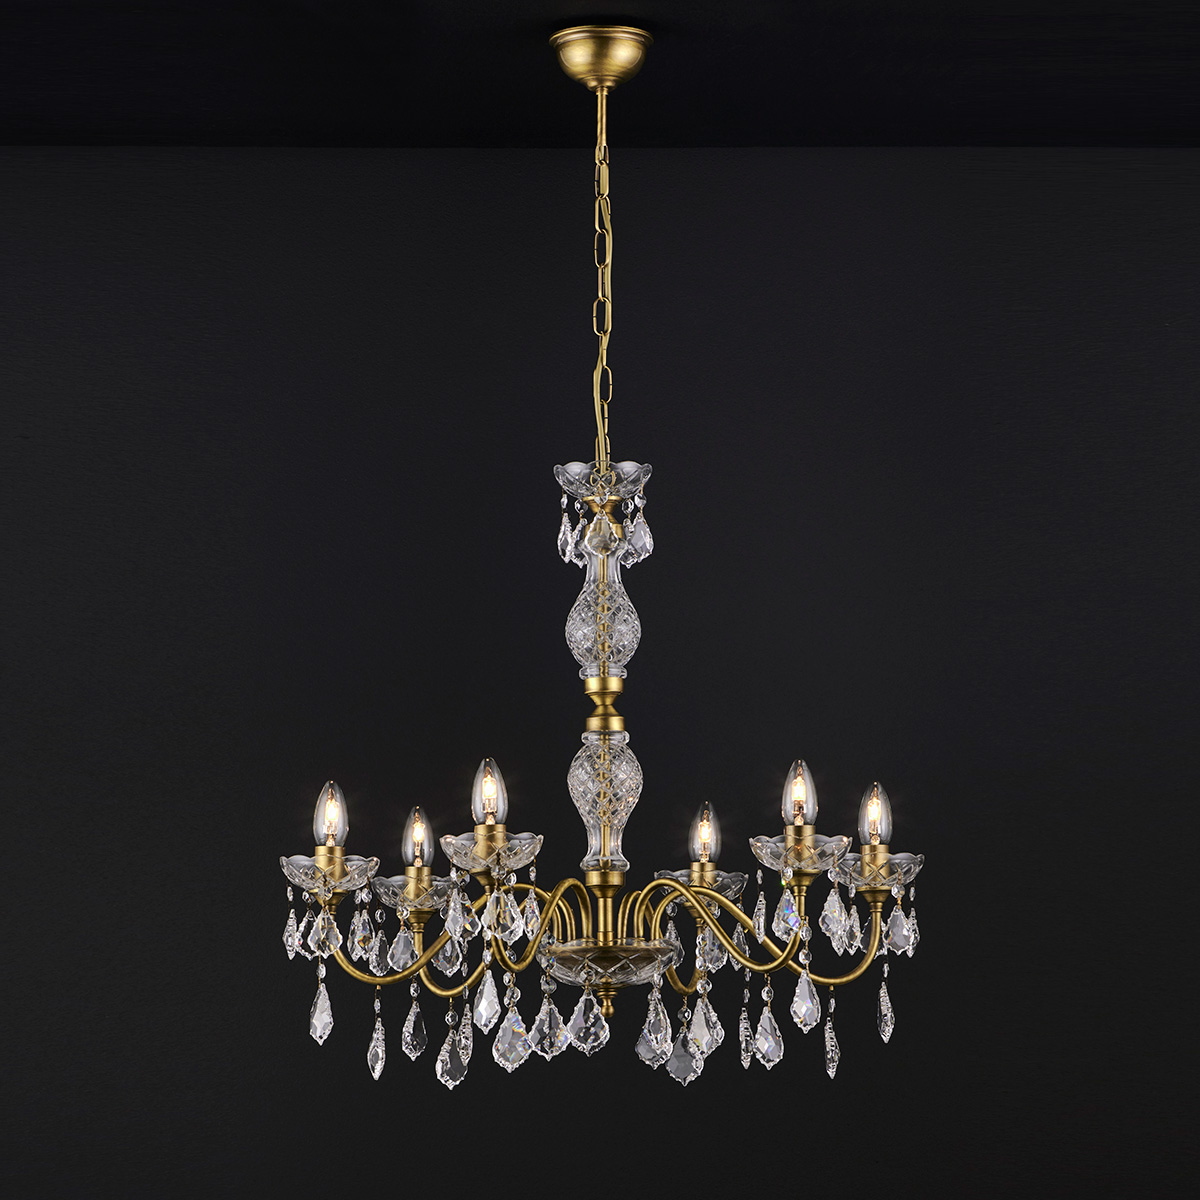 Κλασικό 6φωτο κρεμαστό φωτιστικό με κρύσταλλα ΔΙΟΝ classic 6-bulb chandelier with crystal accents